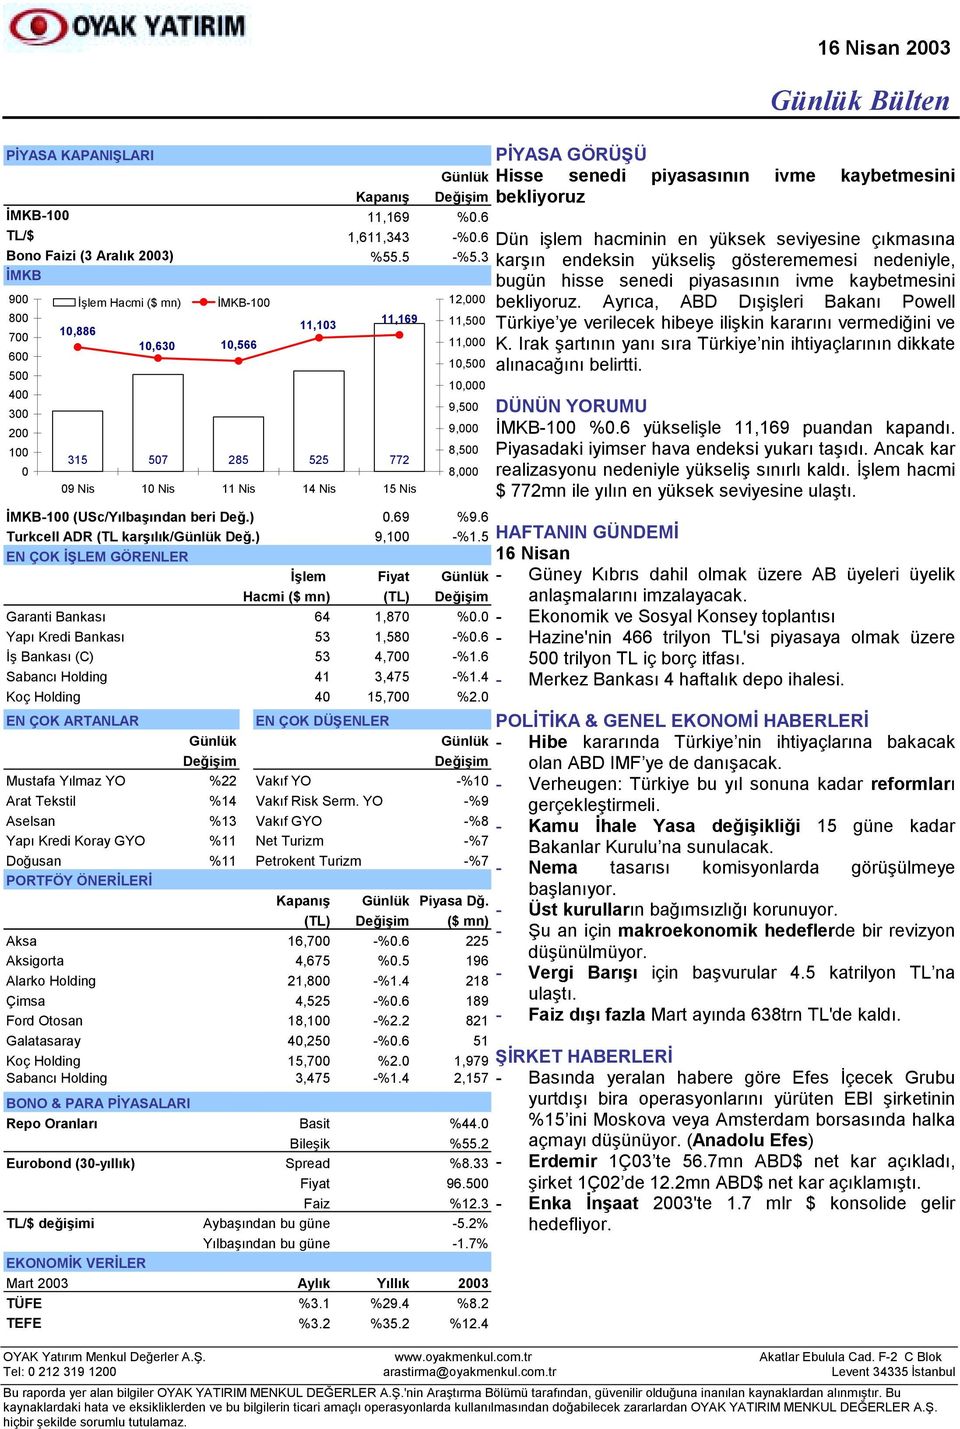 6 Turkcell ADR (TL karşõlõk/ Değ.) 9,100 -%1.5 EN ÇOK İŞLEM GÖRENLER İşlem Fiyat Hacmi ($ mn) (TL) Değişim Garanti Bankasõ 64 1,870 %0.0 Yapõ Kredi Bankasõ 53 1,580 -%0.6 İş Bankasõ (C) 53 4,700 -%1.